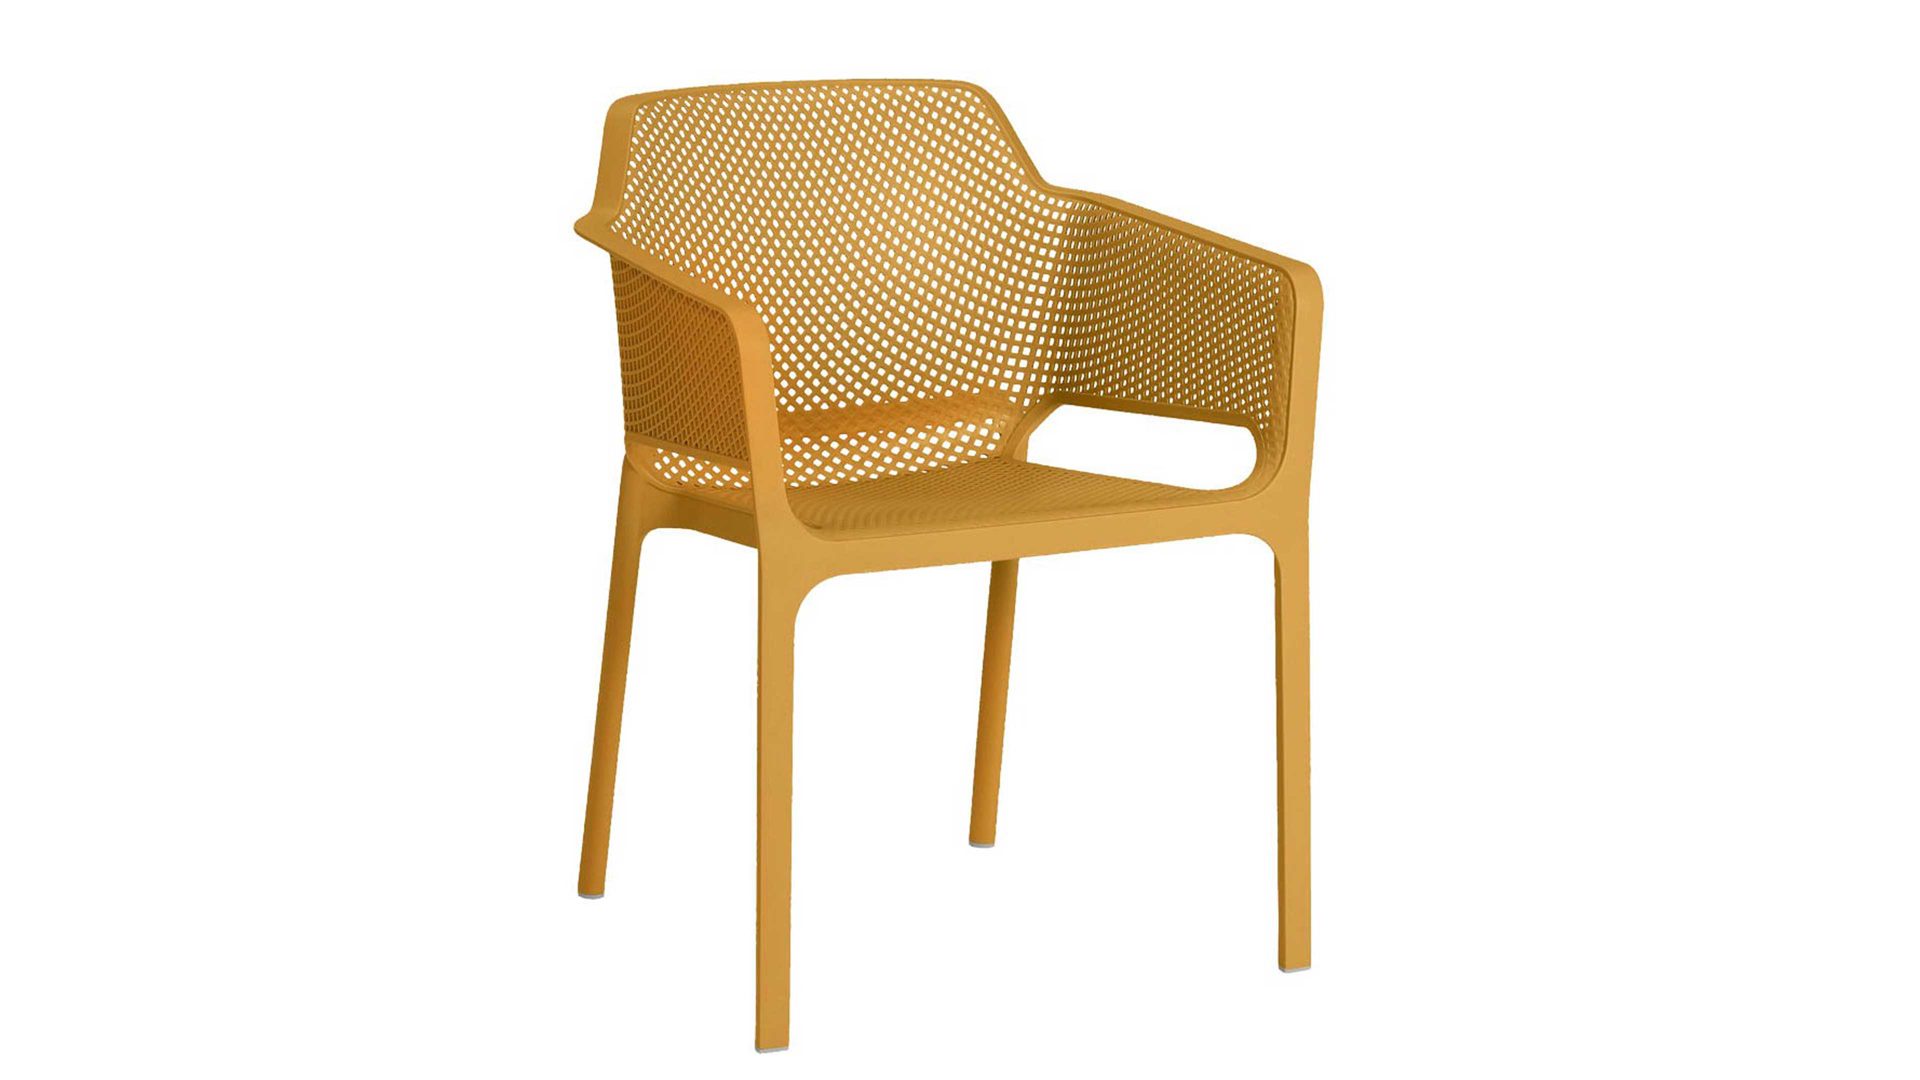 Gartenstuhl /-sessel Best freizeitmöbel aus Kunststoff in Gelb BEST FREIZEITMÖBEL Stapelsessel Ohio senffarbener Fiberglas-Kunststoff